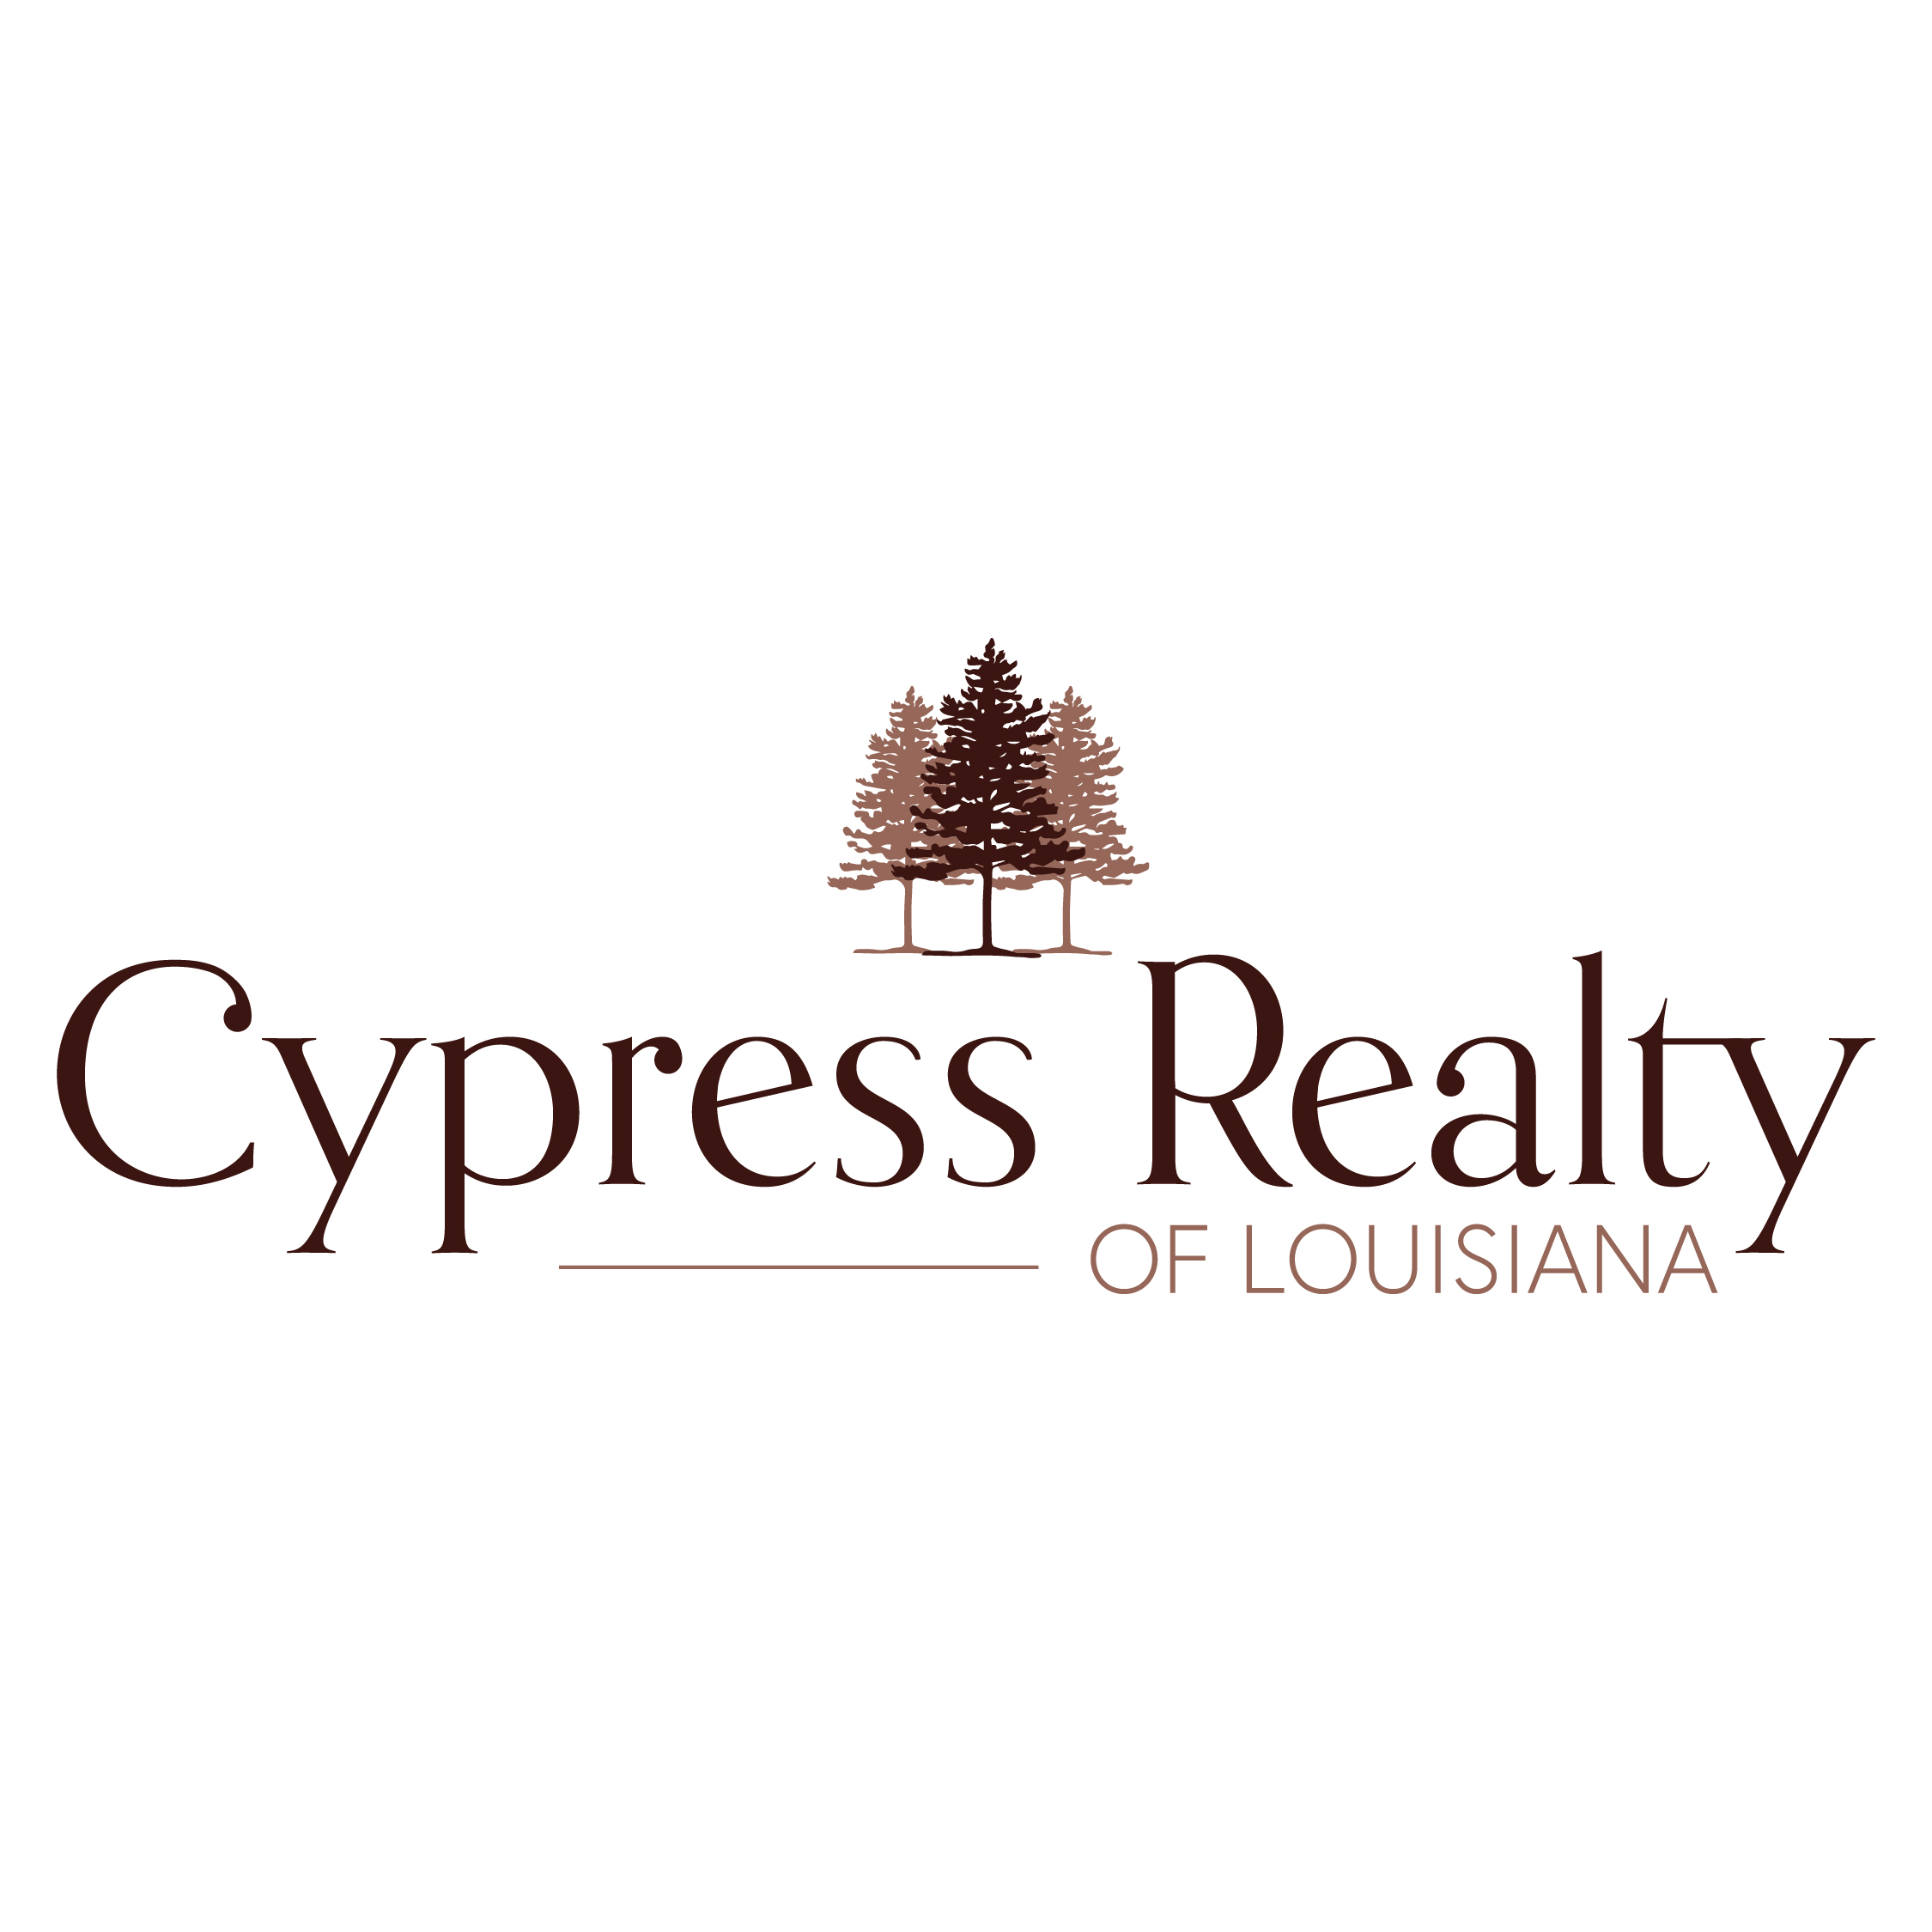 Cypress Realty of Louisiana 